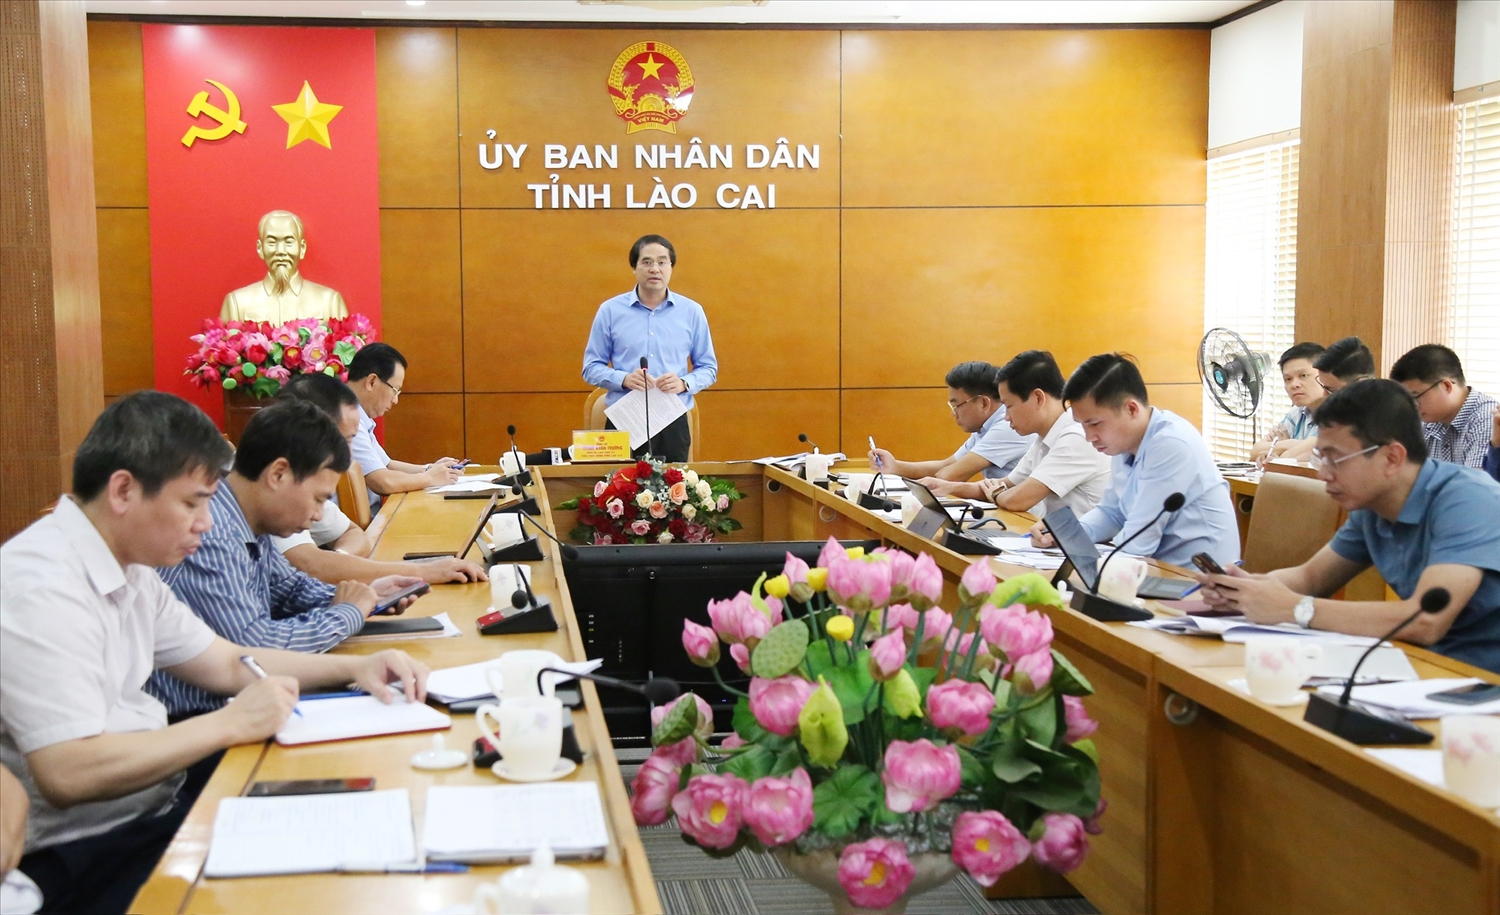 Tỉnh Lào Cai đang kiến nghị Trung ương xem xét điều chỉnh một số chỉ tiêu để bảo đảm thực hiện hiệu quả Chương trình MTQG 1719.